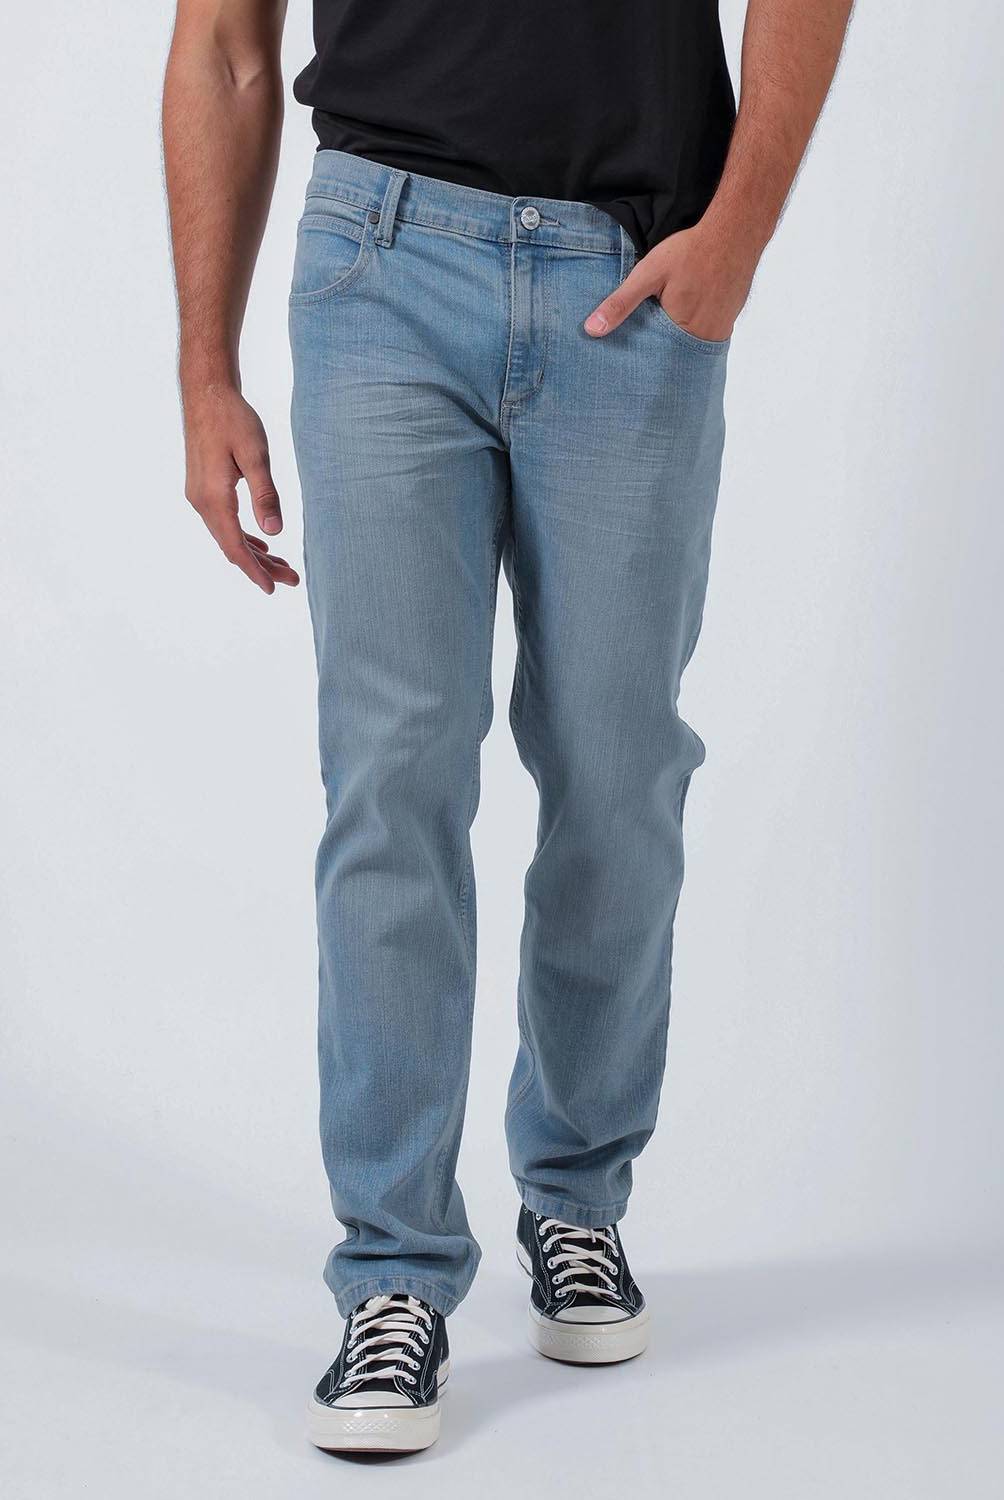 WRANGLER Jeans Hombre Slim Fit Wrangler | falabella.com